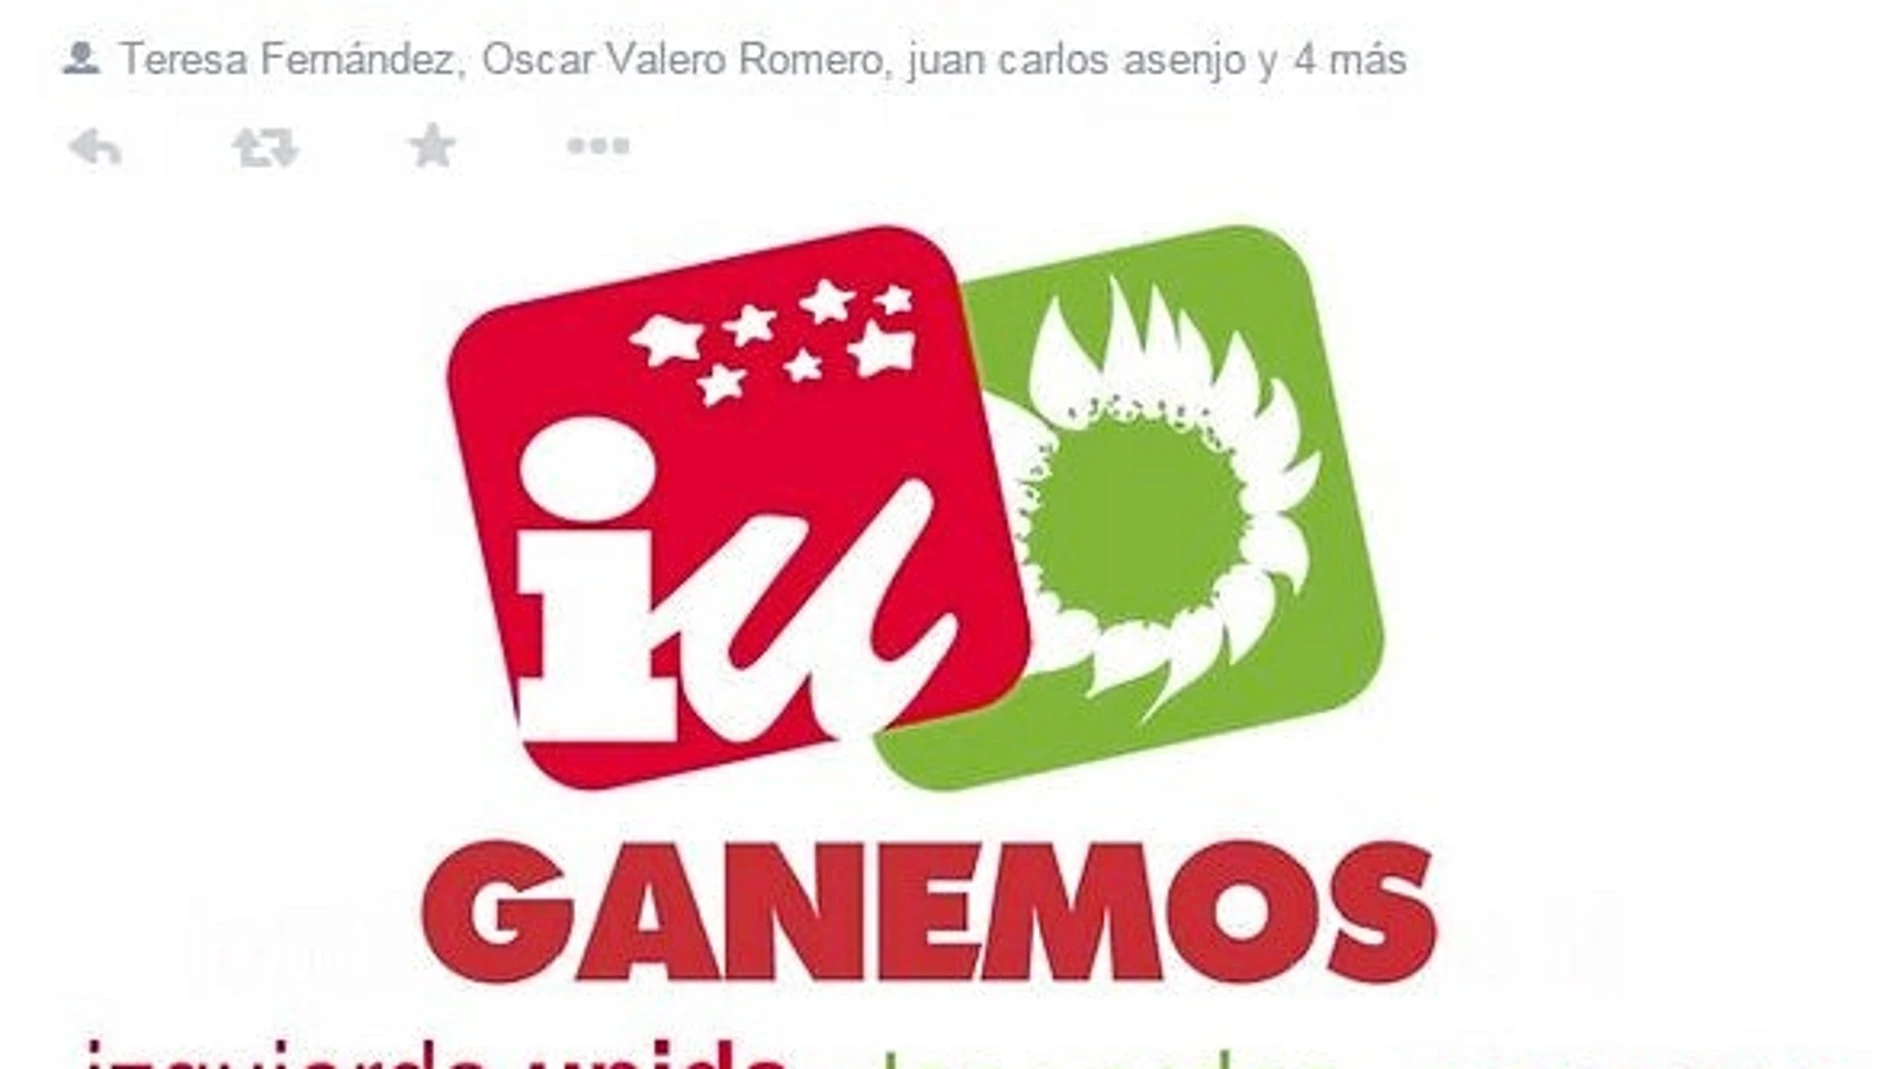 «¡Ya tenemos el logo de la coalición electoral!». Con este tuit desde el perfil de IU Fuenlabrada anunciaba el polémico logo en el que la formación utiliza los nombre de Ganemos y Los Verdes